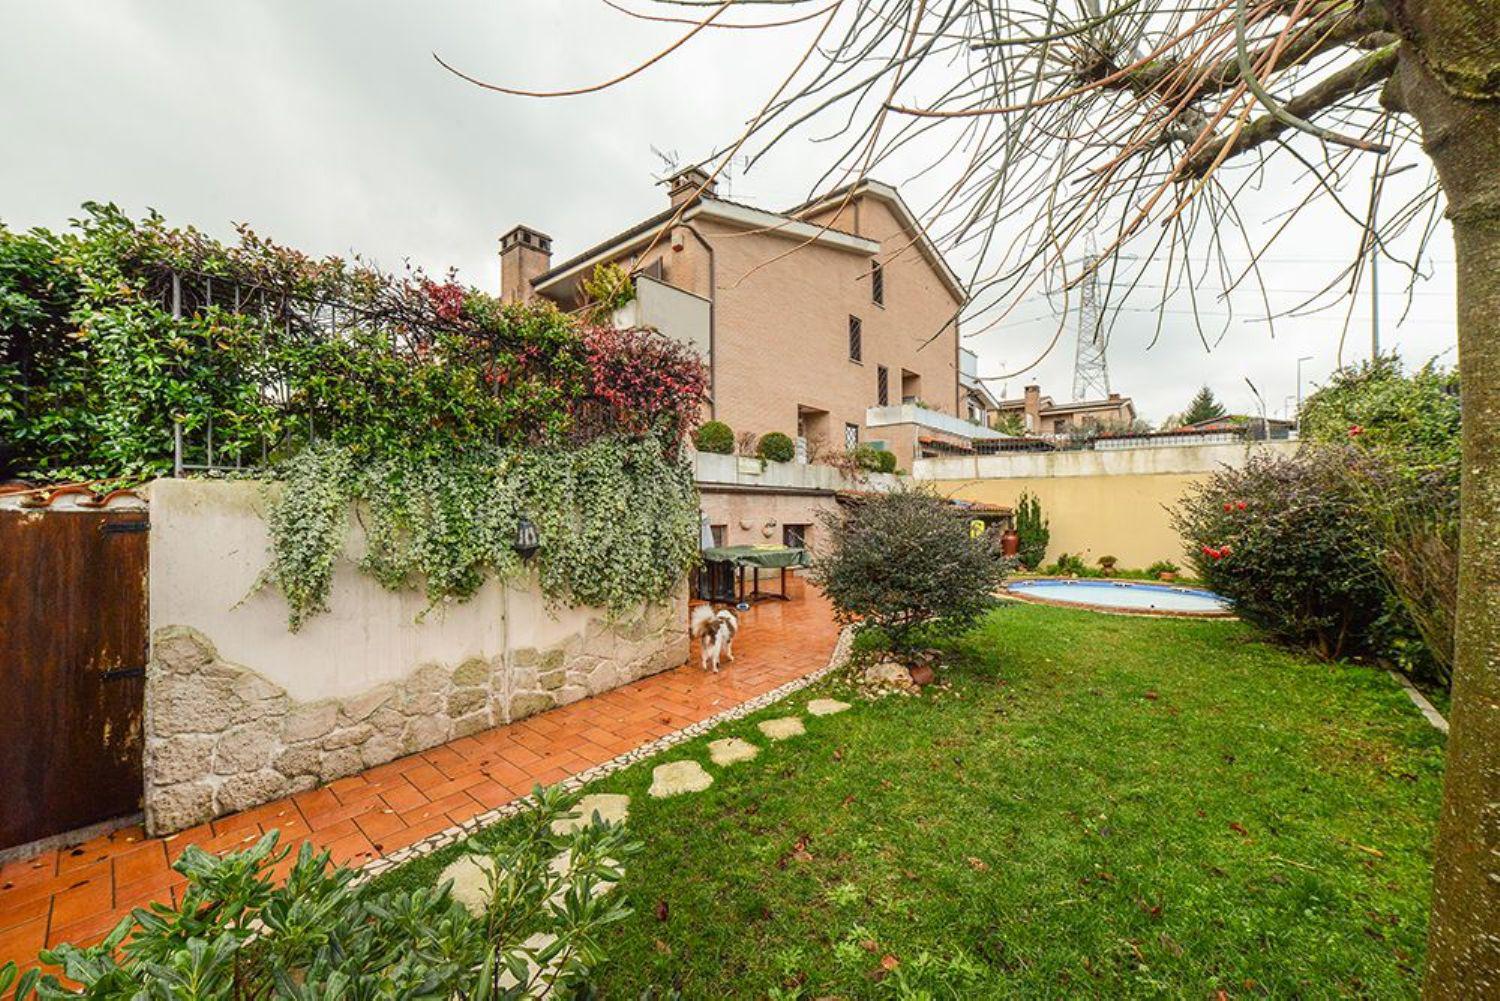 Villa in vendita a San Cesareo, 5 locali, prezzo € 320.000 | CambioCasa.it